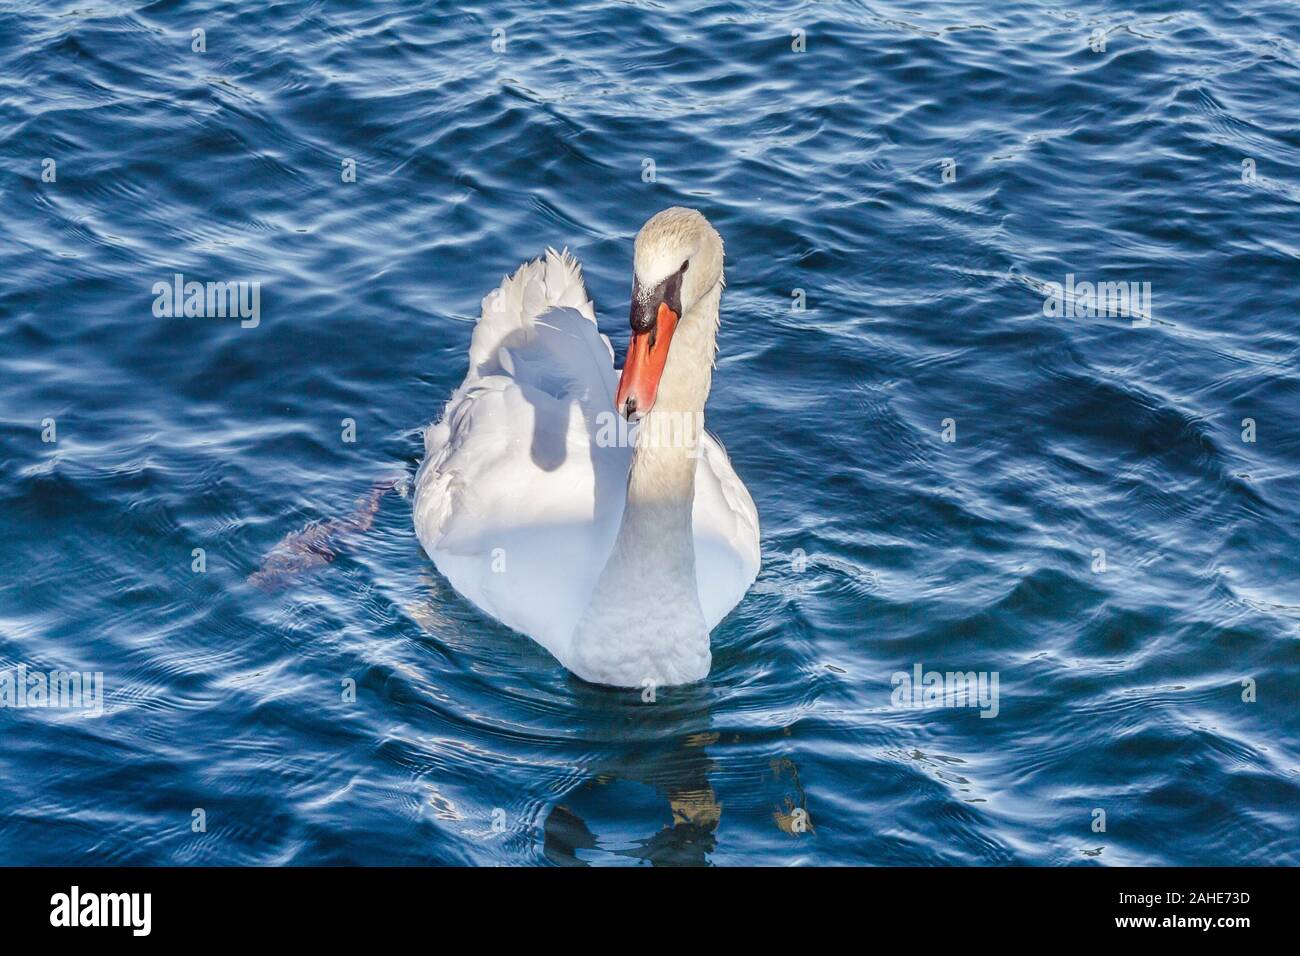 Un cygne blanc brillant avec une facture orange lumineux bleu, flotte dans l'eau ridée, avec la lumière du soleil jette une ombre de son cou et de la tête sur son dos. Banque D'Images